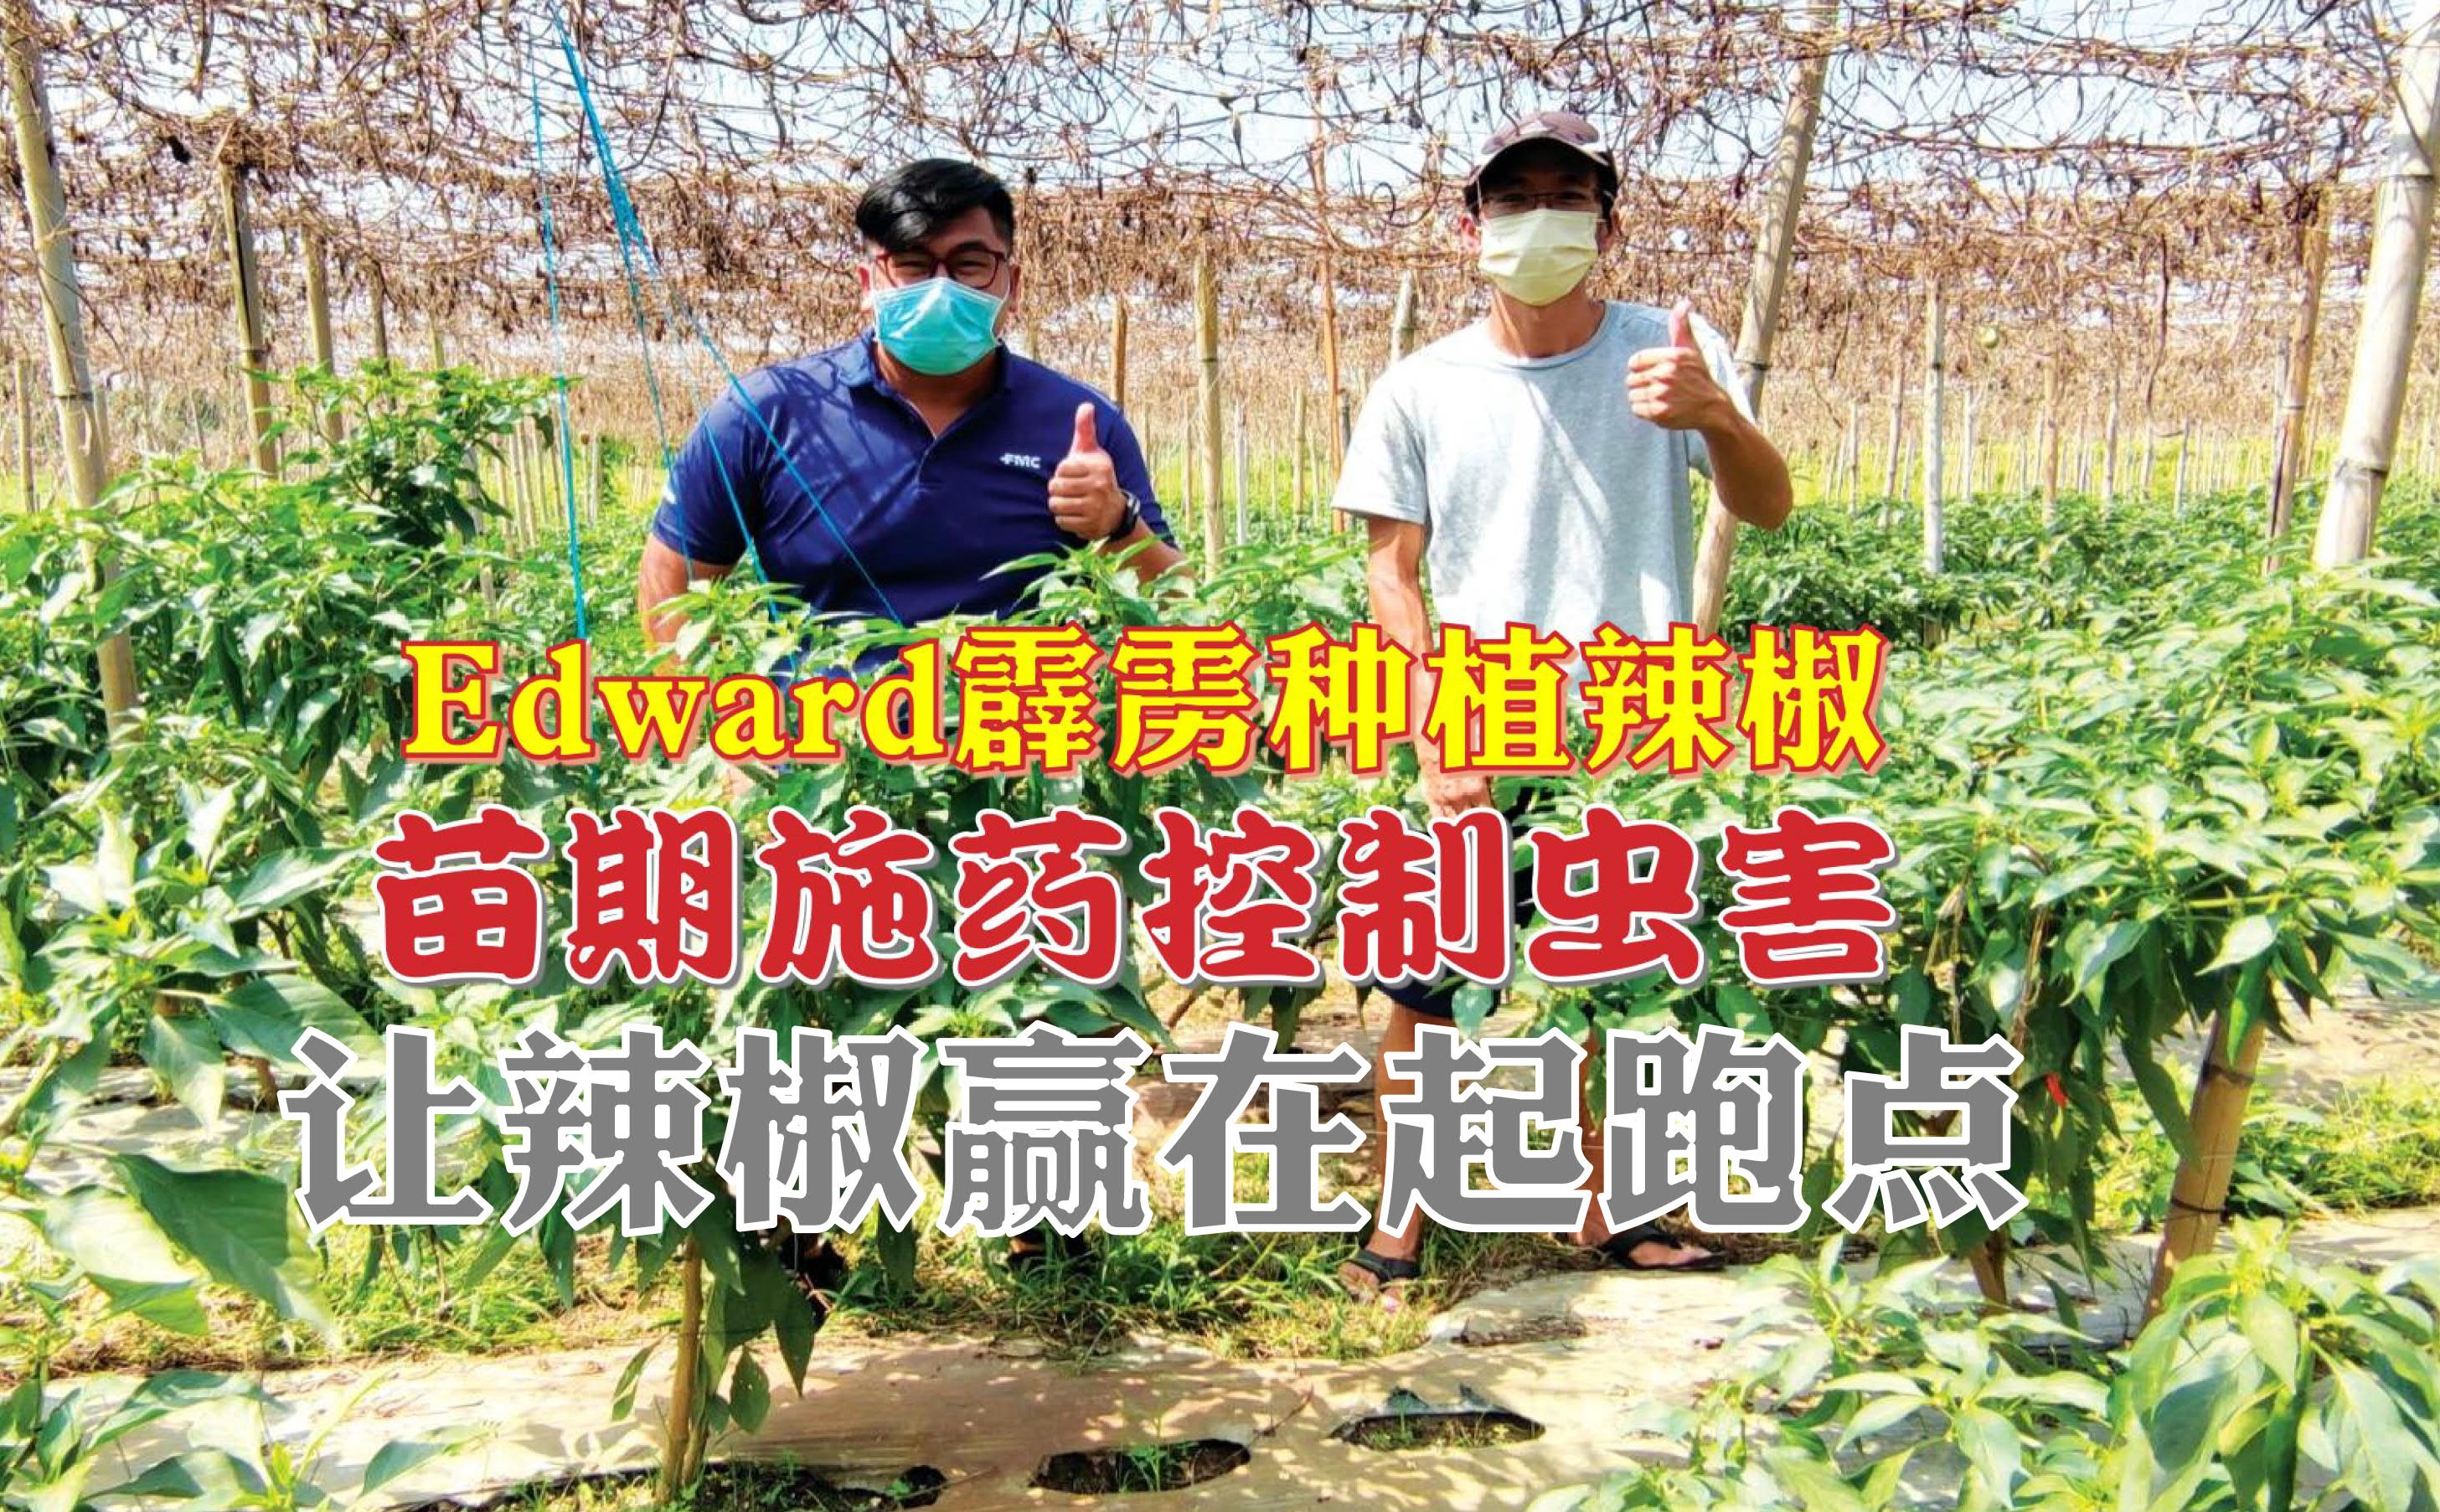 苗期施药控制虫害 让辣椒赢在起跑点 - 农牧世界